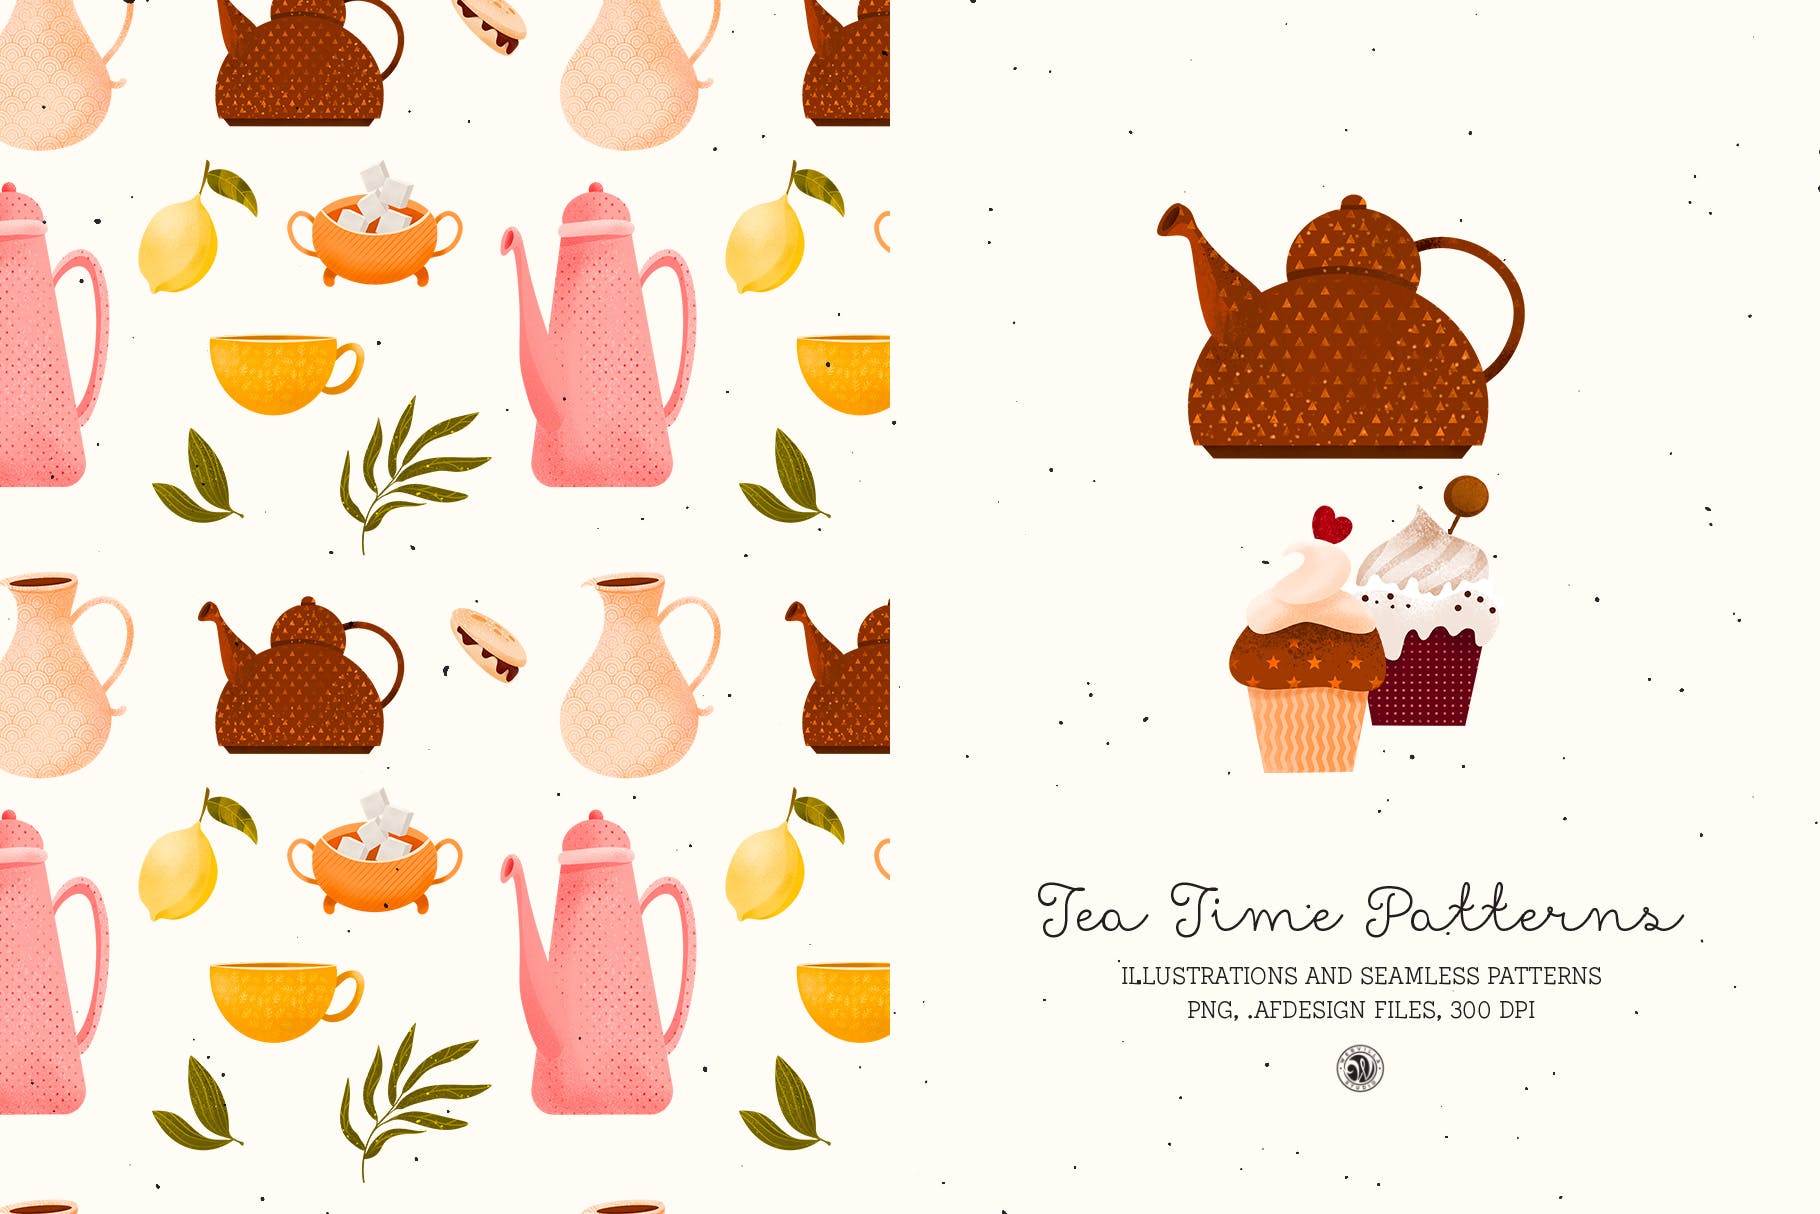 下午茶时光主题点心甜点手绘图案无缝背景素材 Tea Time Patterns插图5